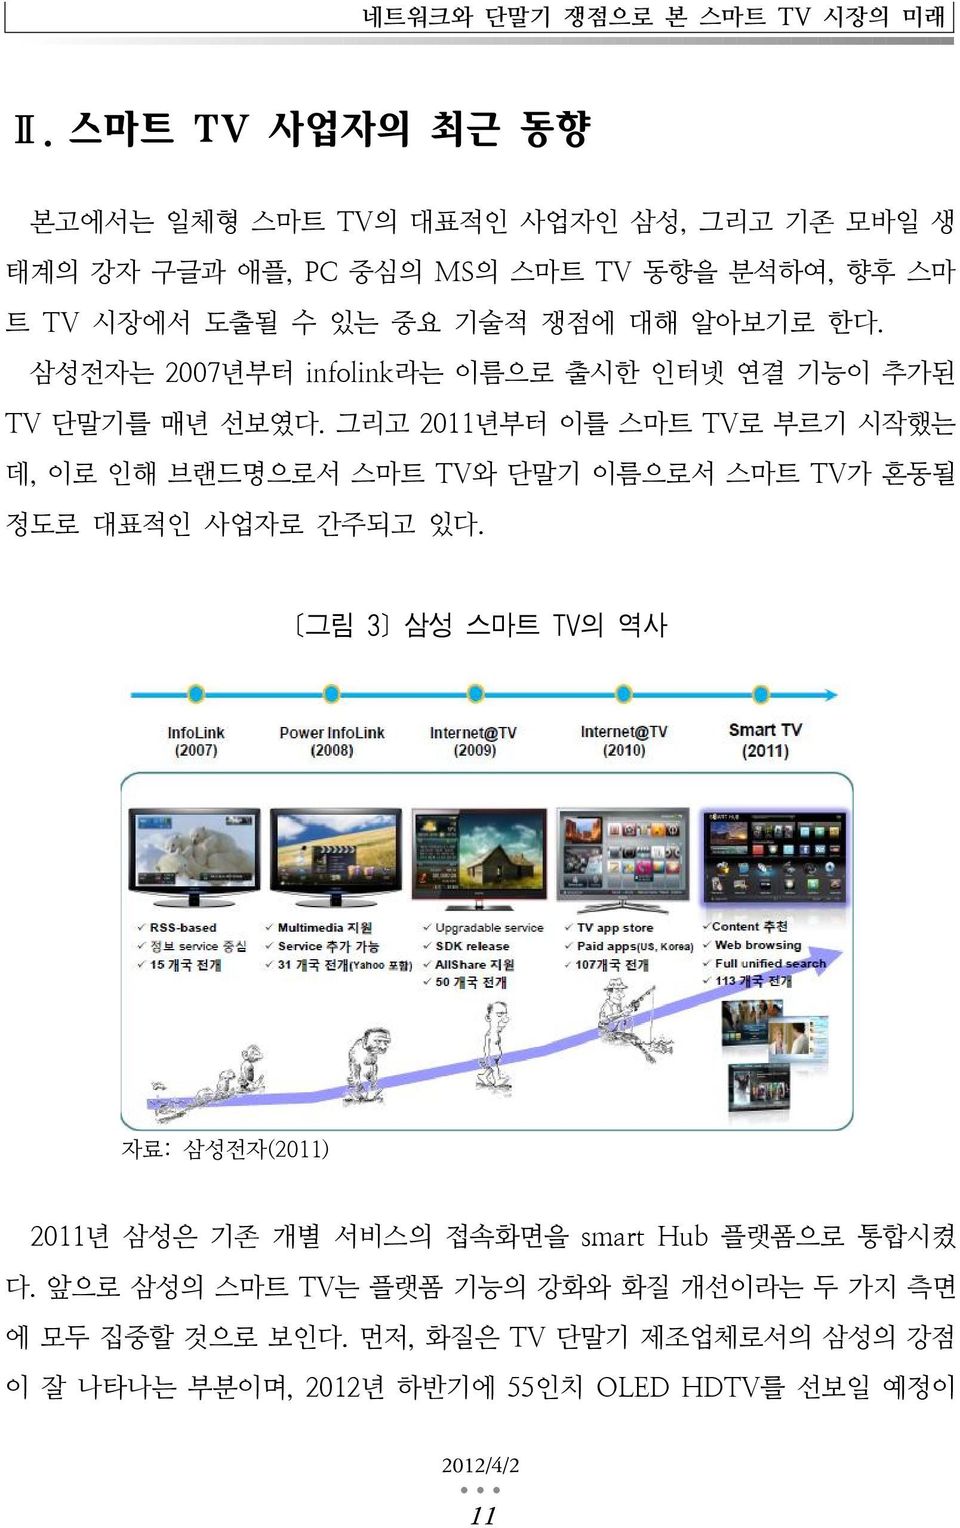 알아보기로 한다. 삼성전자는 2007년부터 infolink라는 이름으로 출시한 인터넷 연결 기능이 추가된 TV 단말기를 매년 선보였다.